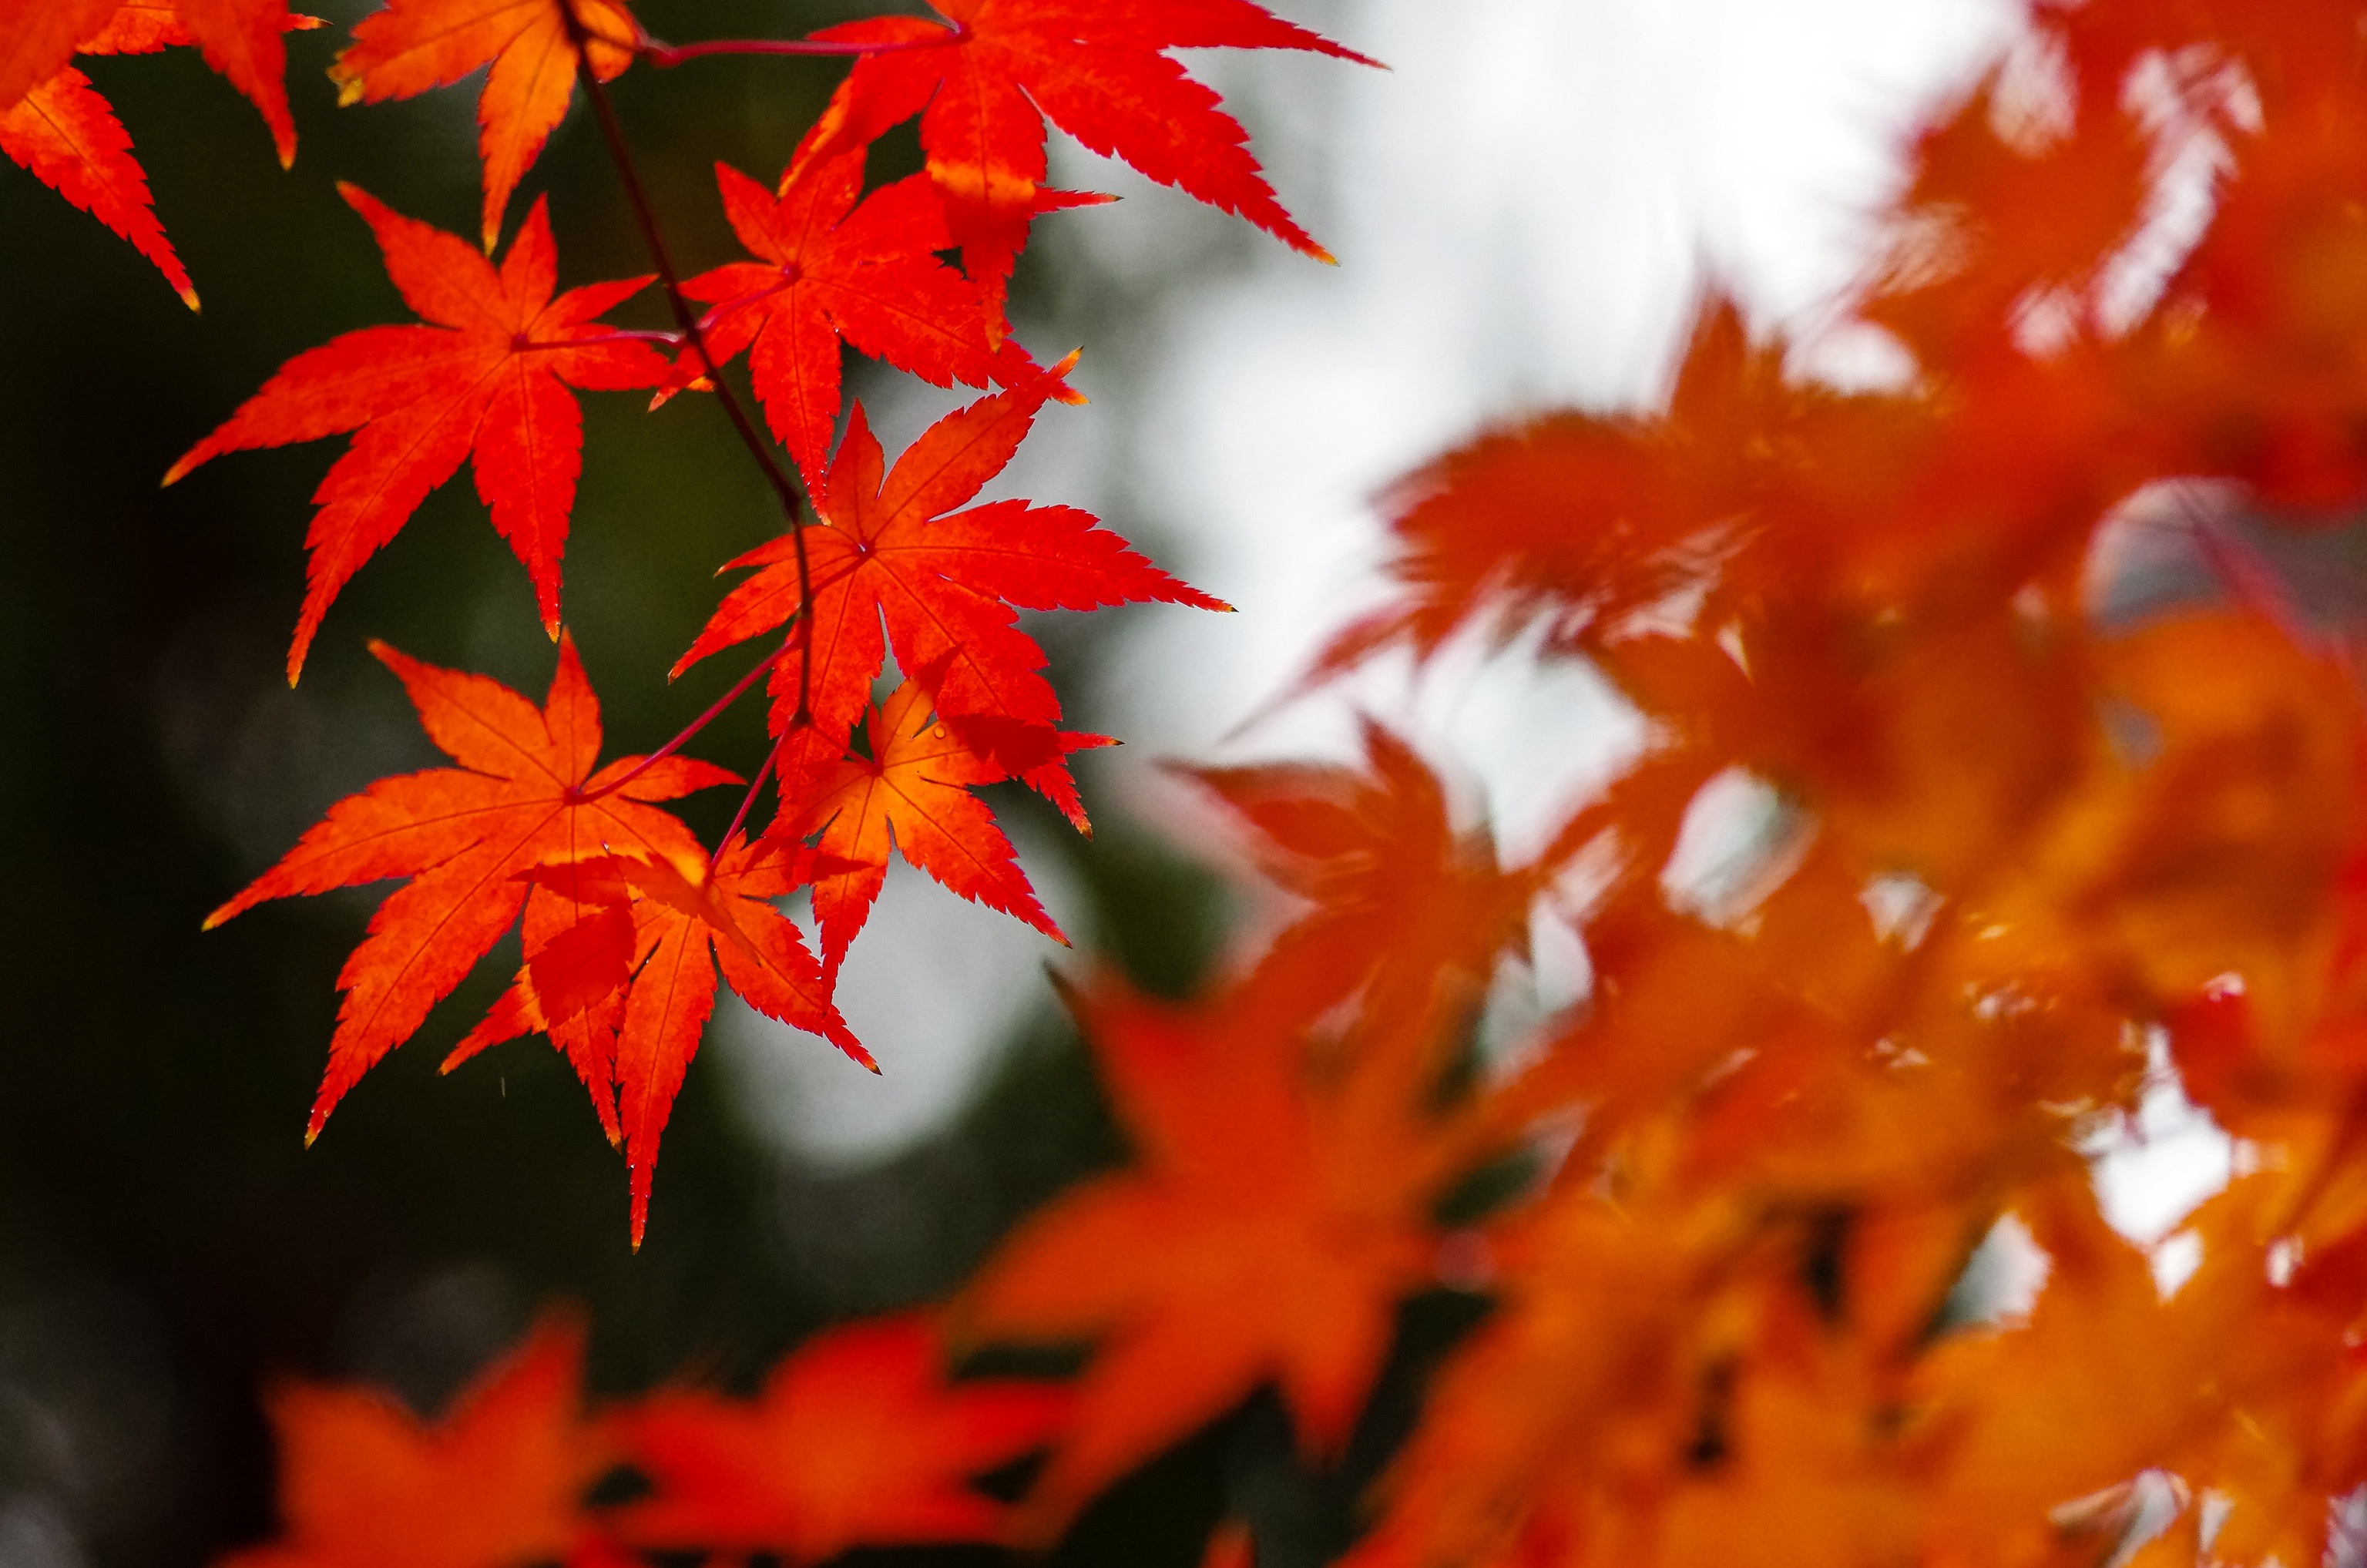 Скачать обои бесплатно Осень, Лист, Кленовый Лист, Земля/природа картинка на рабочий стол ПК